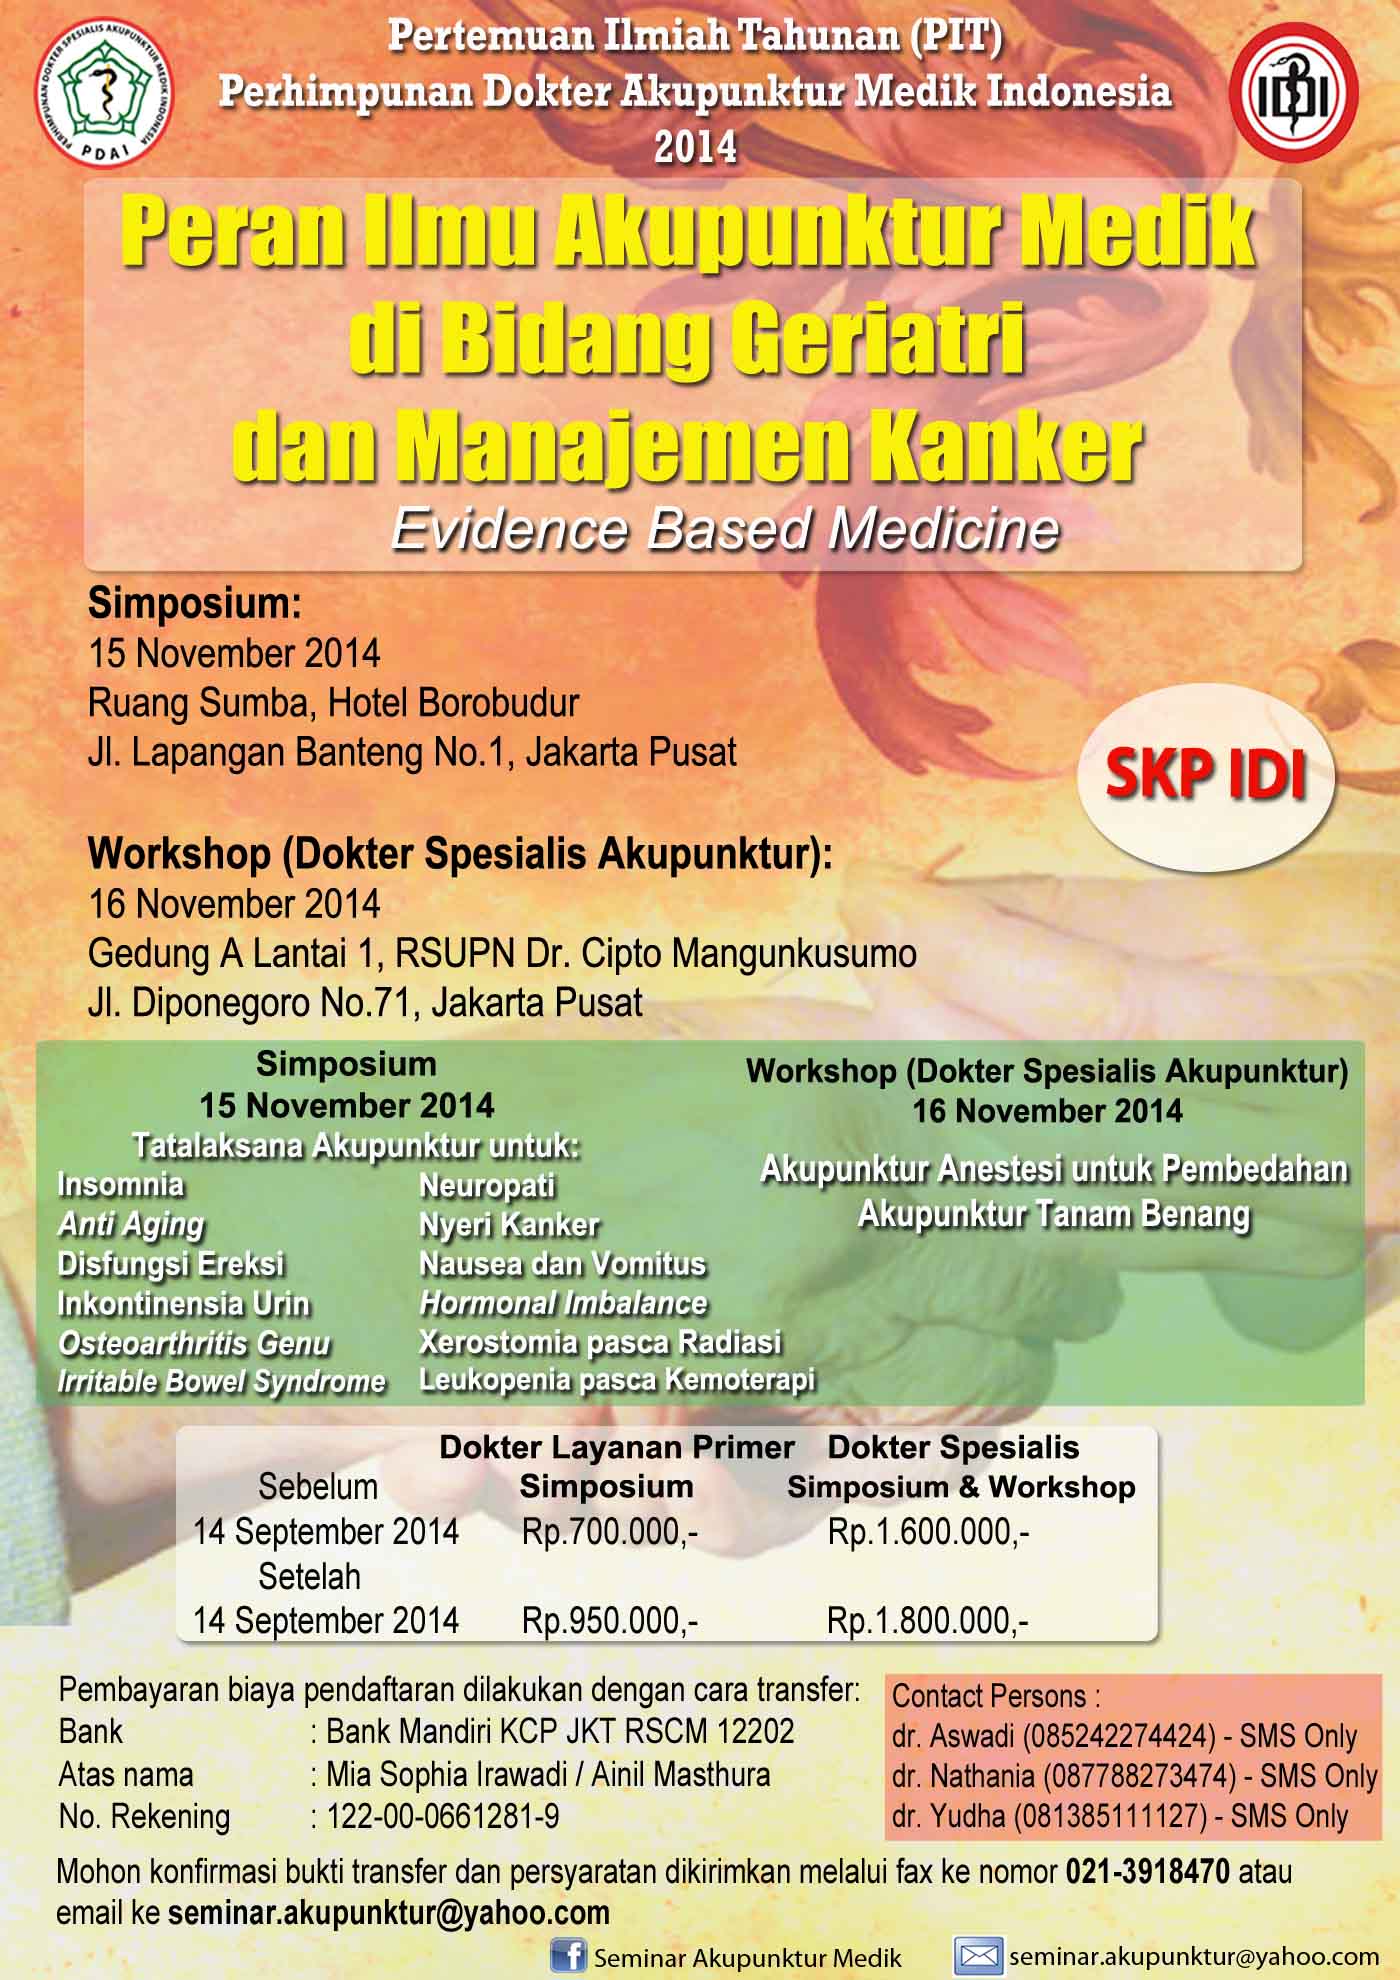 Peran Ilmu Akupunktur Medik di Bidang Geriatri dan Manajemen Kanker (Evidence Based Medicine) - Perhimpunan Dokter Spesialis Akupunktur Medik Indonesia